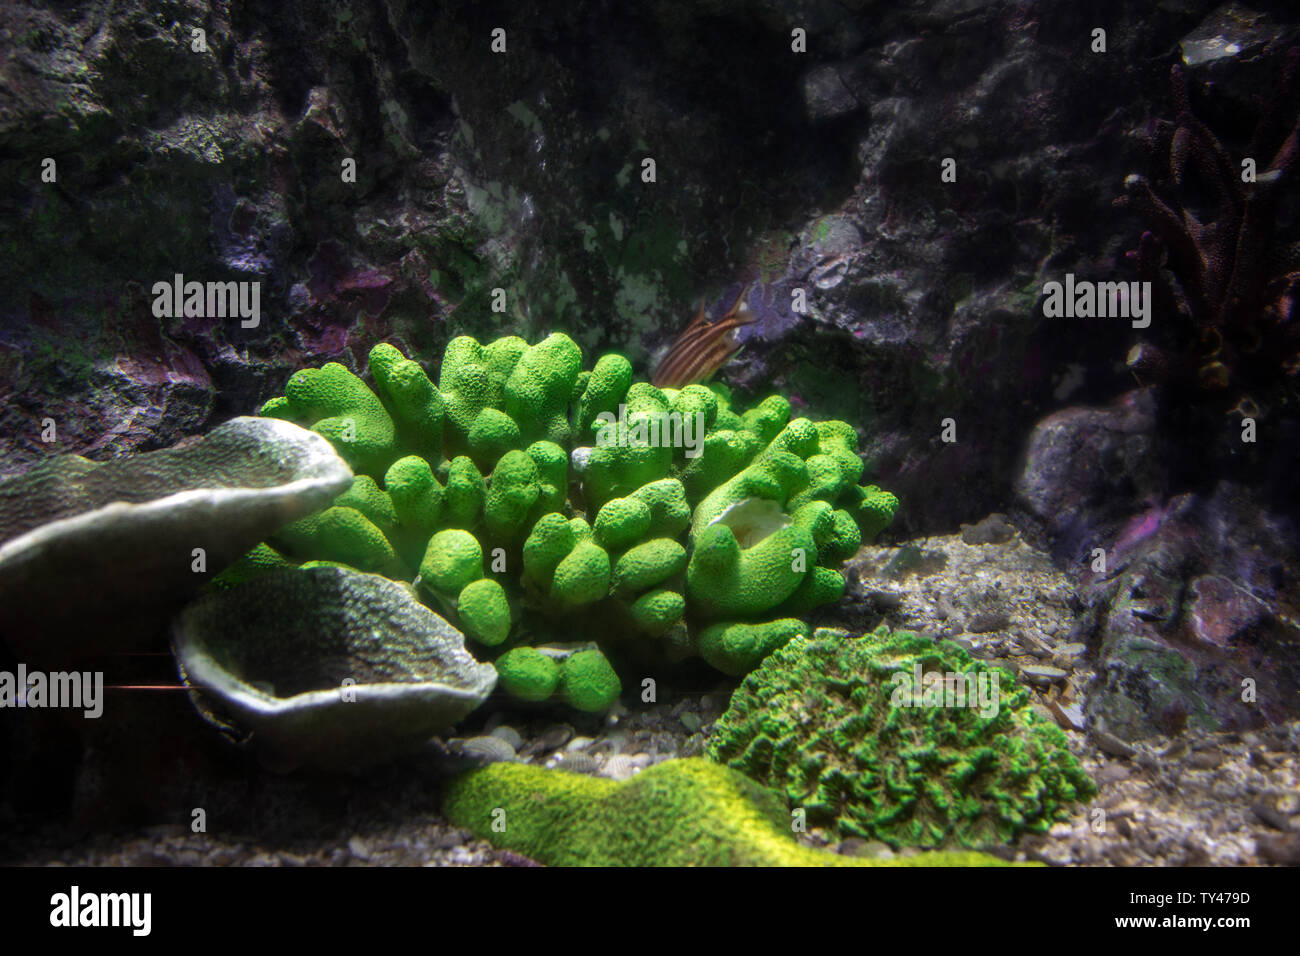 Coral sott'acqua in acquario Sea-life foto Foto Stock